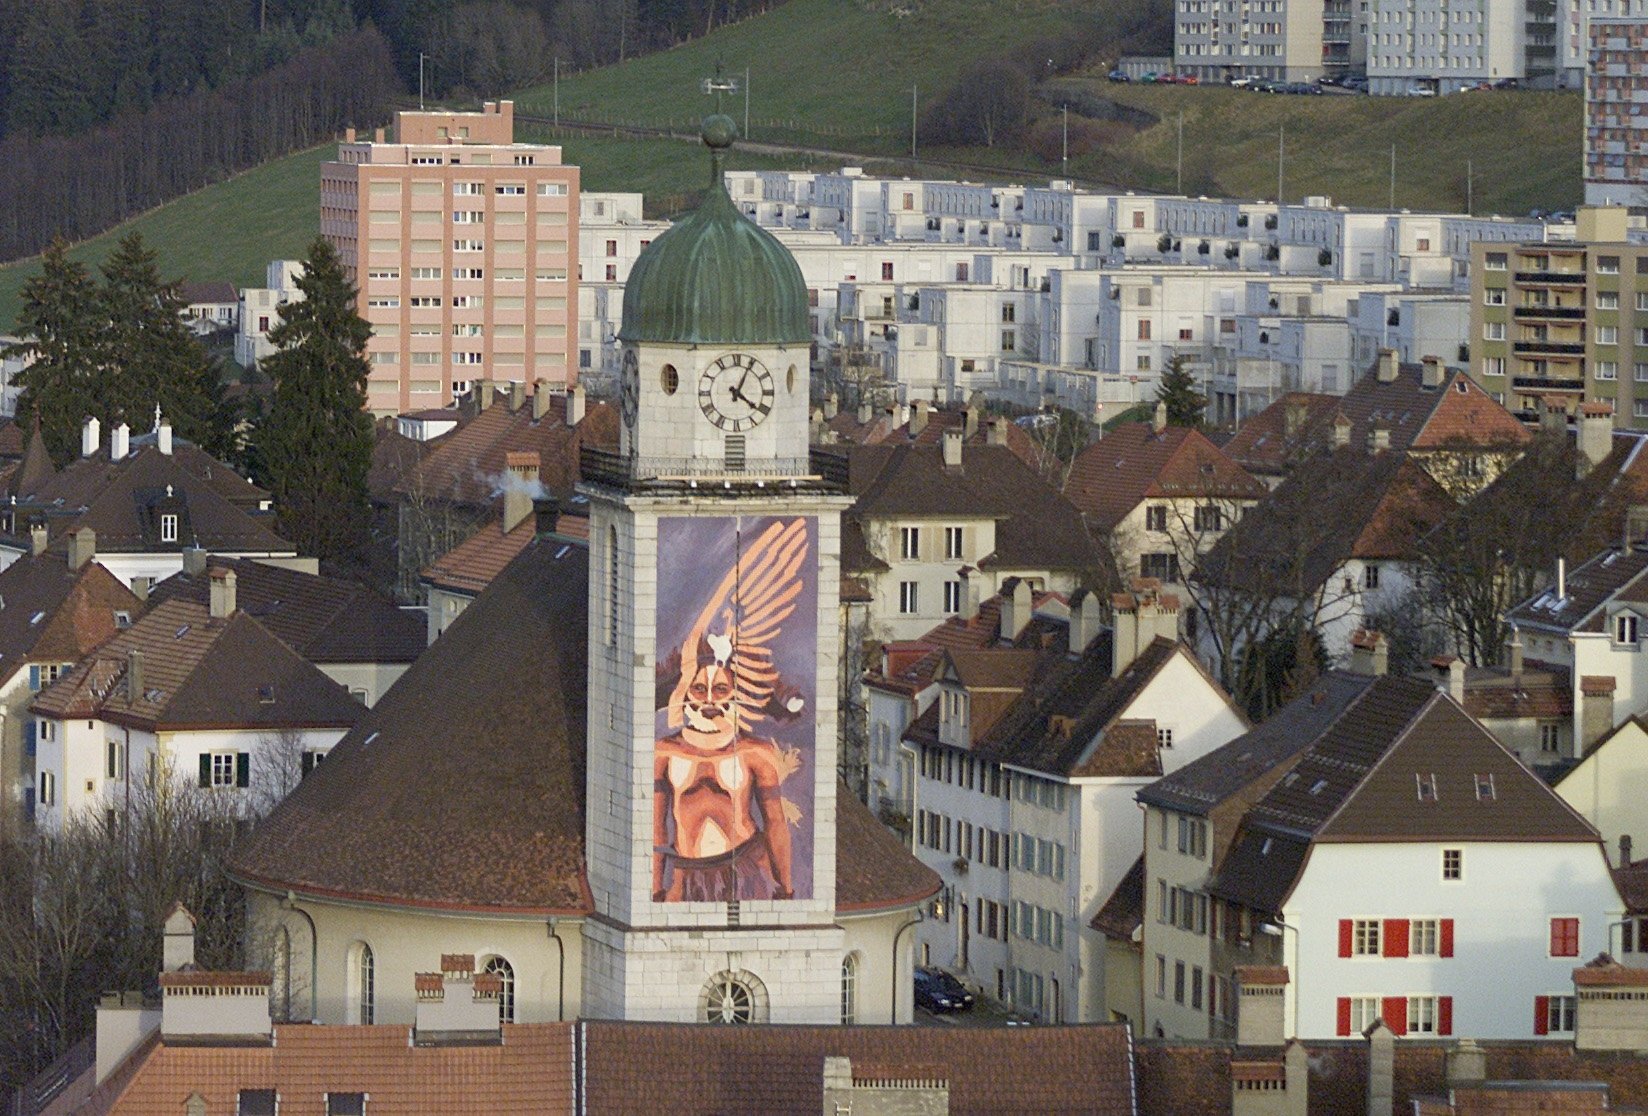 Le 1er décembre 2002, la première toile du calendrier de l’Avent géant est dévoilée sur le Grand Temple de La Chaux-de-Fonds. Vingt-trois autres créations seront affichées sur des bâtiments de la cité.